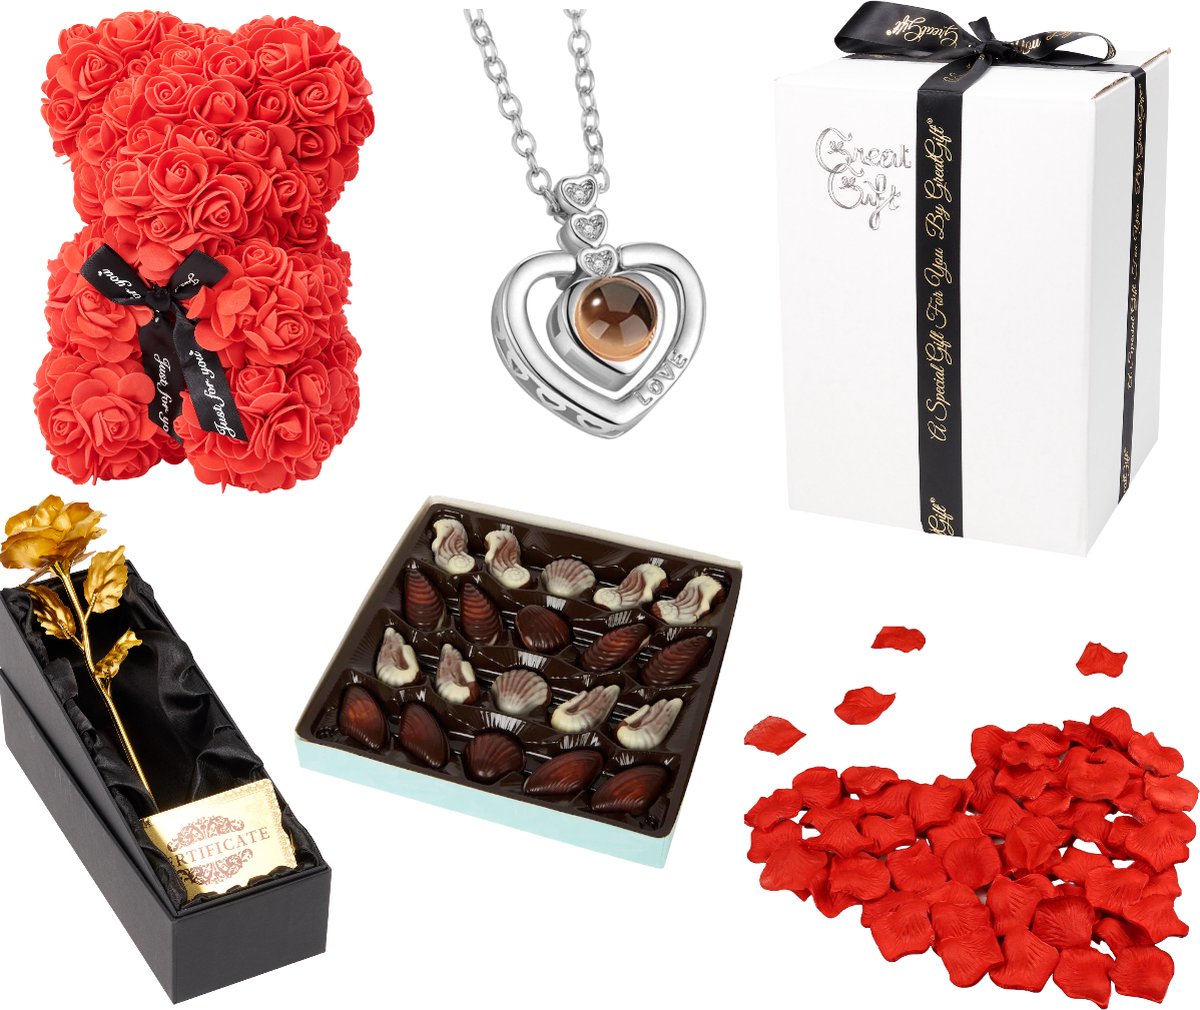 Romantisch Cadeau Pakket - GreatGift - Cadeau Voor vrouw - Liefde - Valentijn - Trouwen - Verjaardag - Geschenk Box - Cadeau -Love Box -Cadeau Box Met Romantische Cadeaus Voor Haar - GreatGift